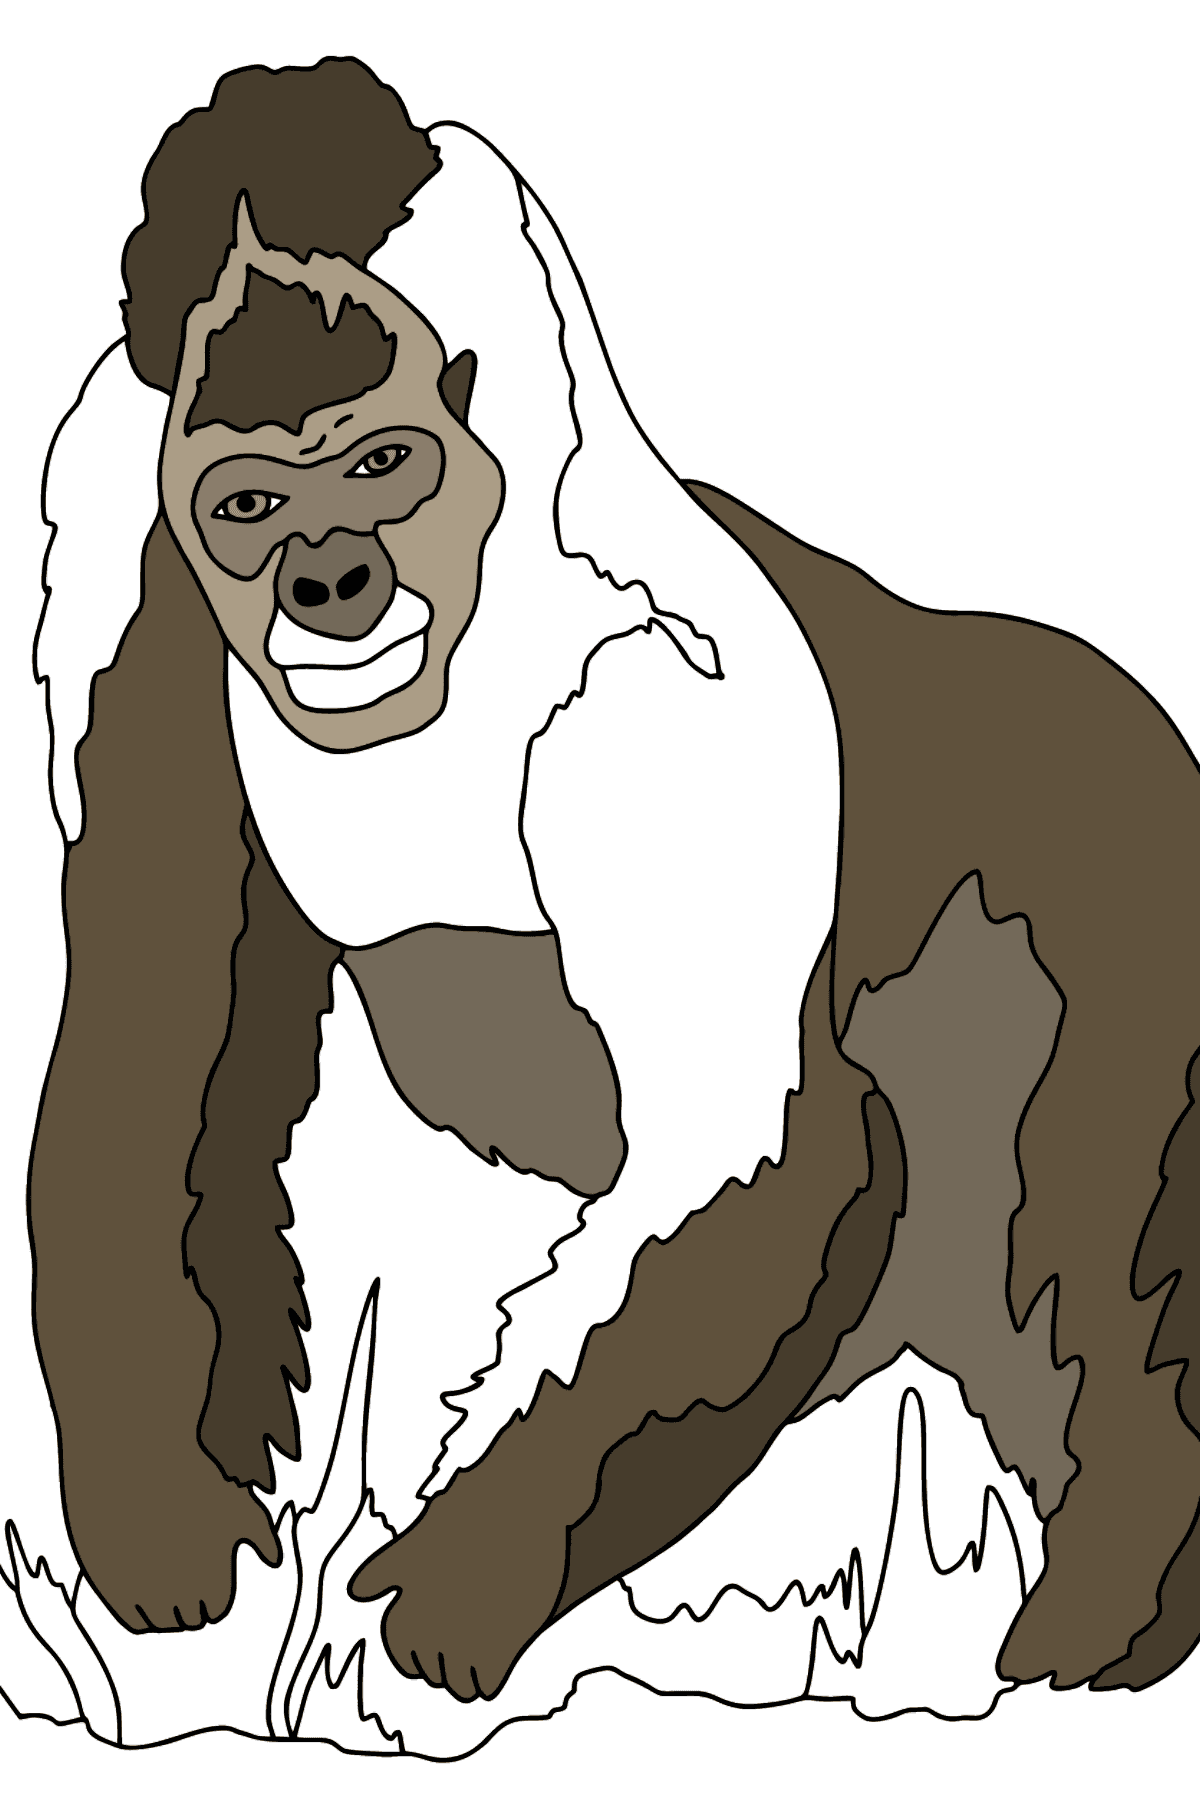 Bellissimo Disegno da colorare - Gorilla - Disegni da colorare per bambini